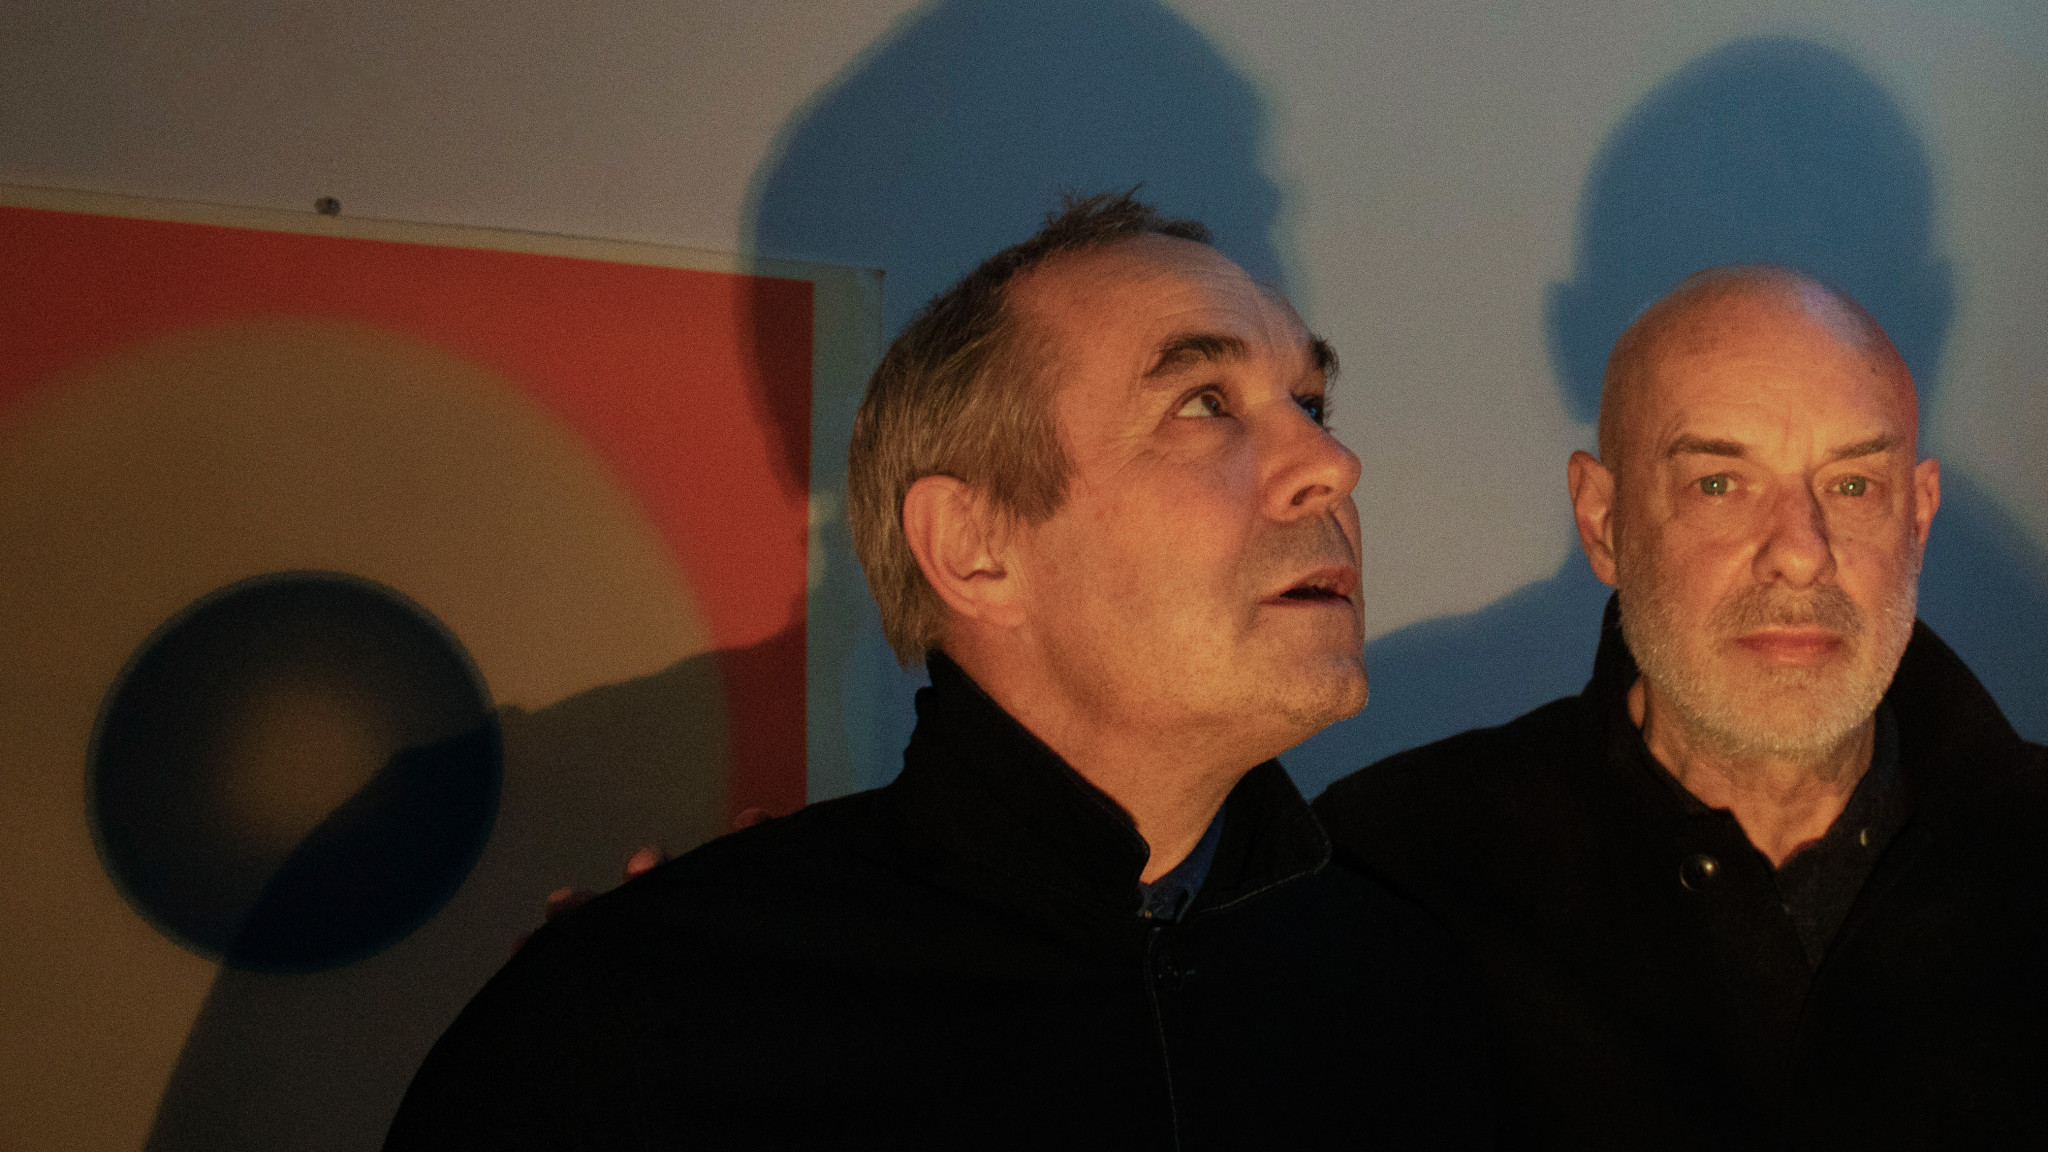 Víkingur Ólafsson meets Roger & Brian Eno - A conversation